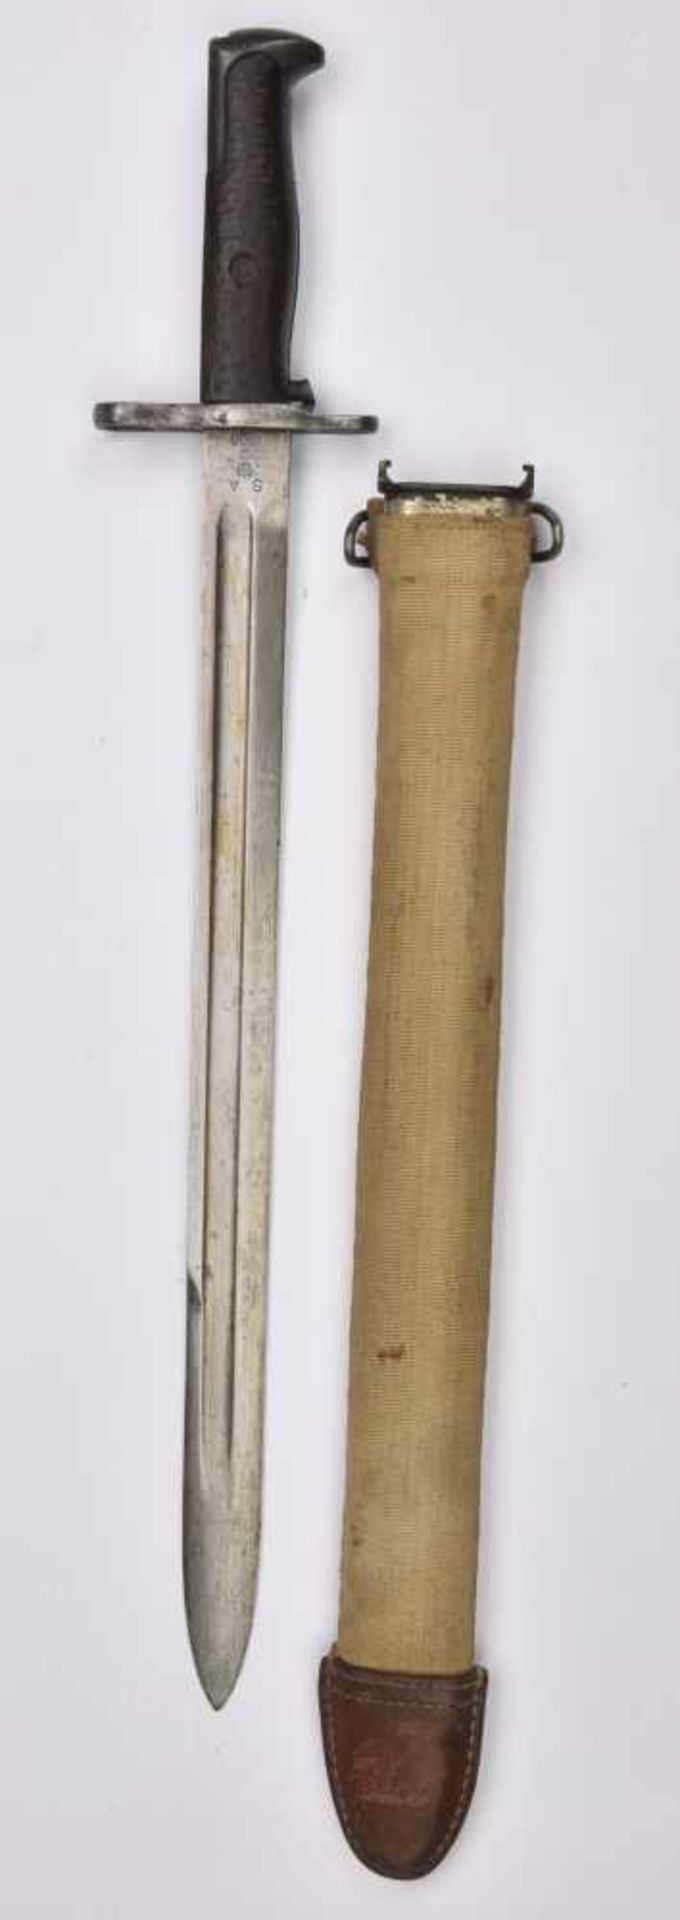 Baïonnette de Springfield 1903 Poignée en bois, lame complète dans sa longueur. Fabrication SA